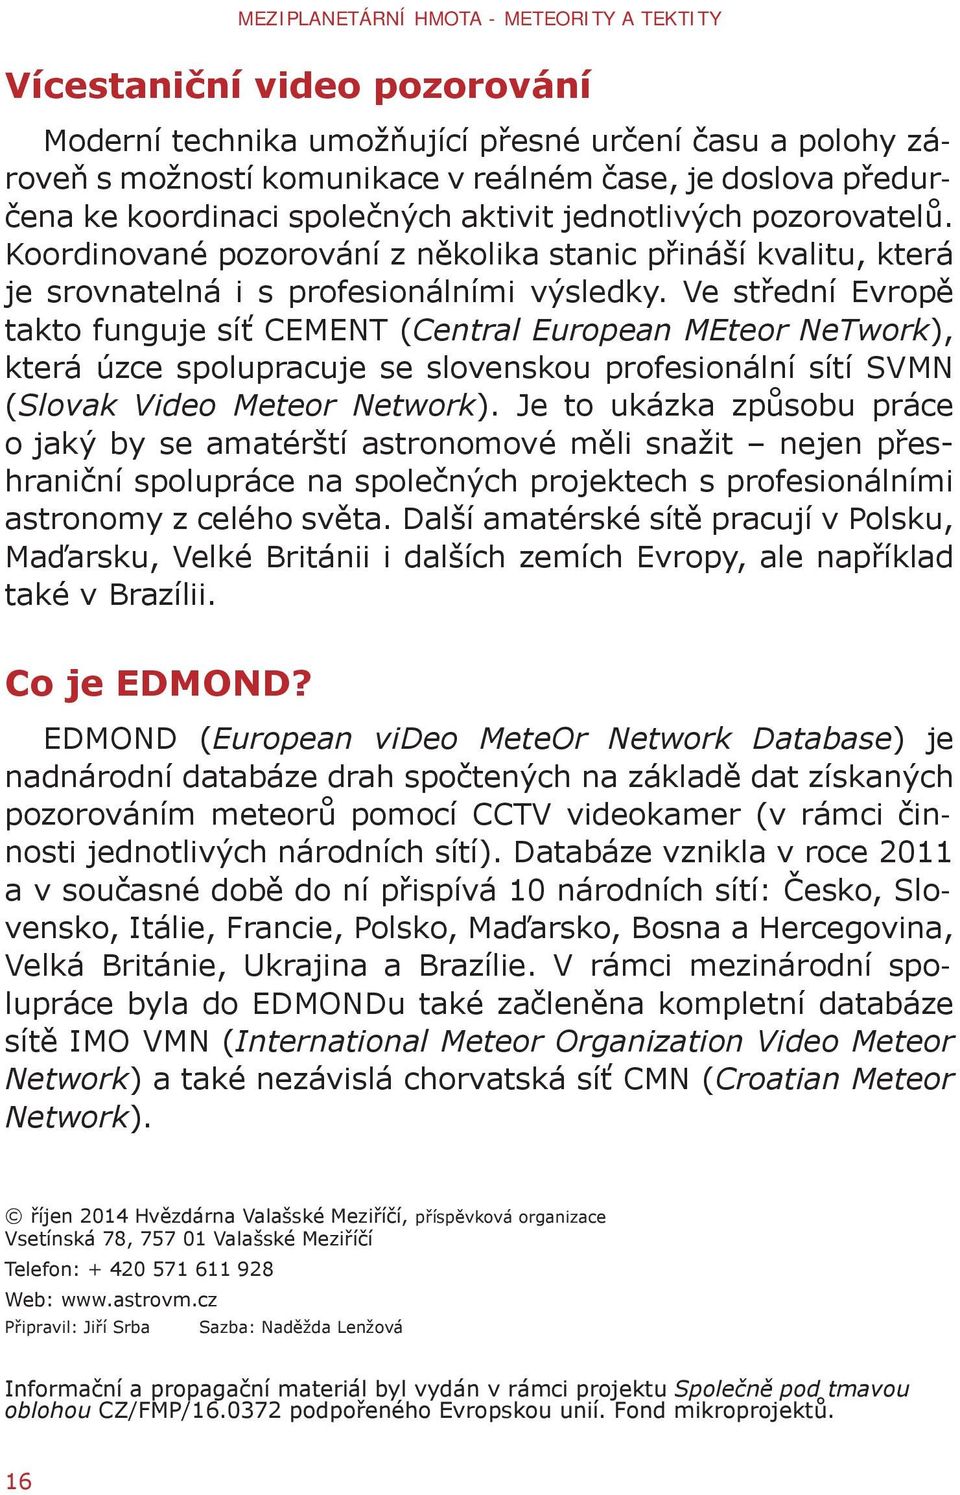 Ve střední Evropě takto funguje síť CEMENT (Central European MEteor NeTwork), která úzce spolupracuje se slovenskou profesionální sítí SVMN (Slovak Video Meteor Network).